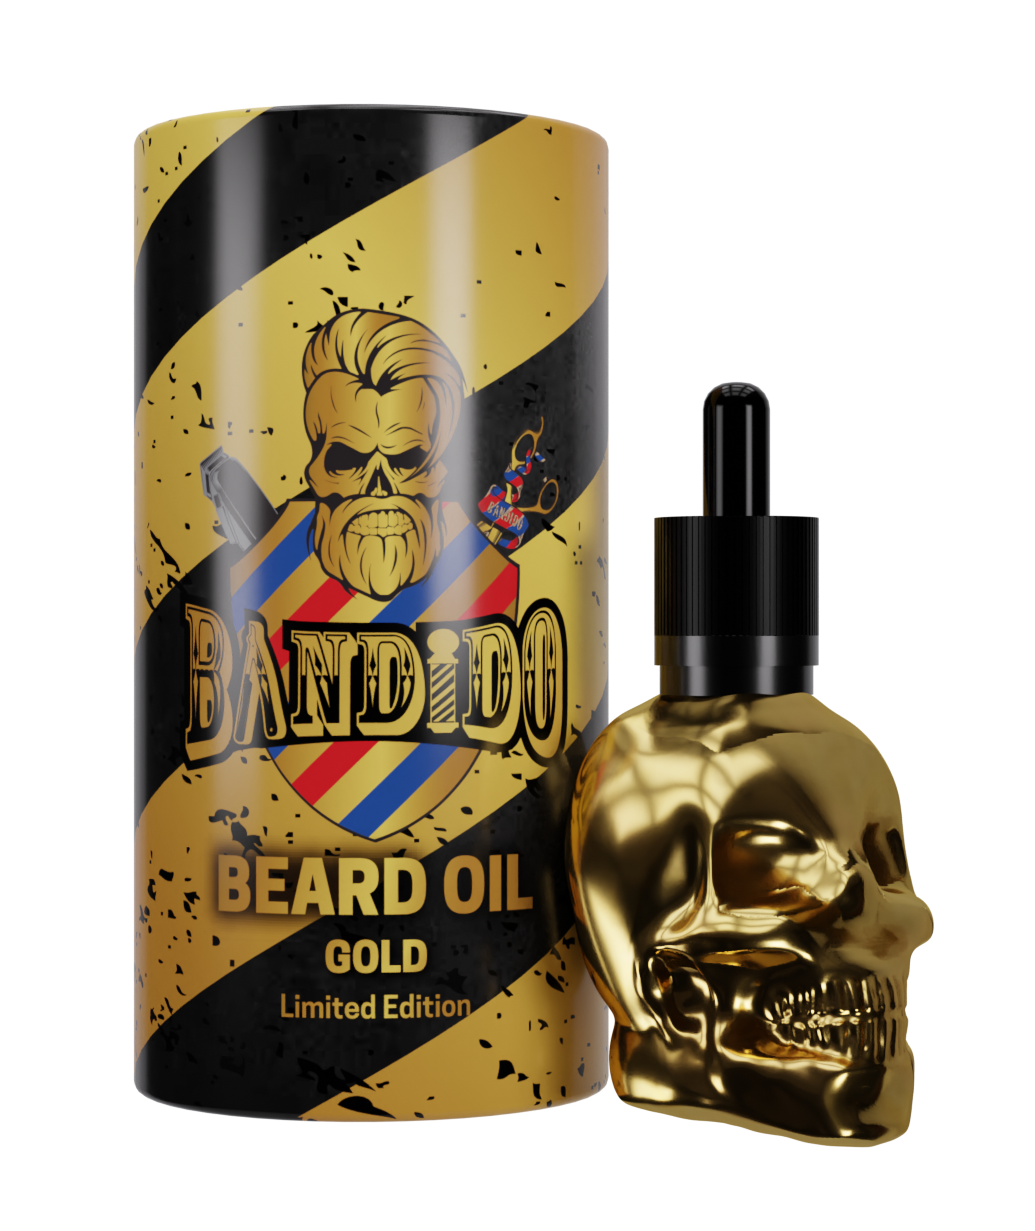 Bandido Beard Oil Gold Limited Edition 40ml/1.36fl oz